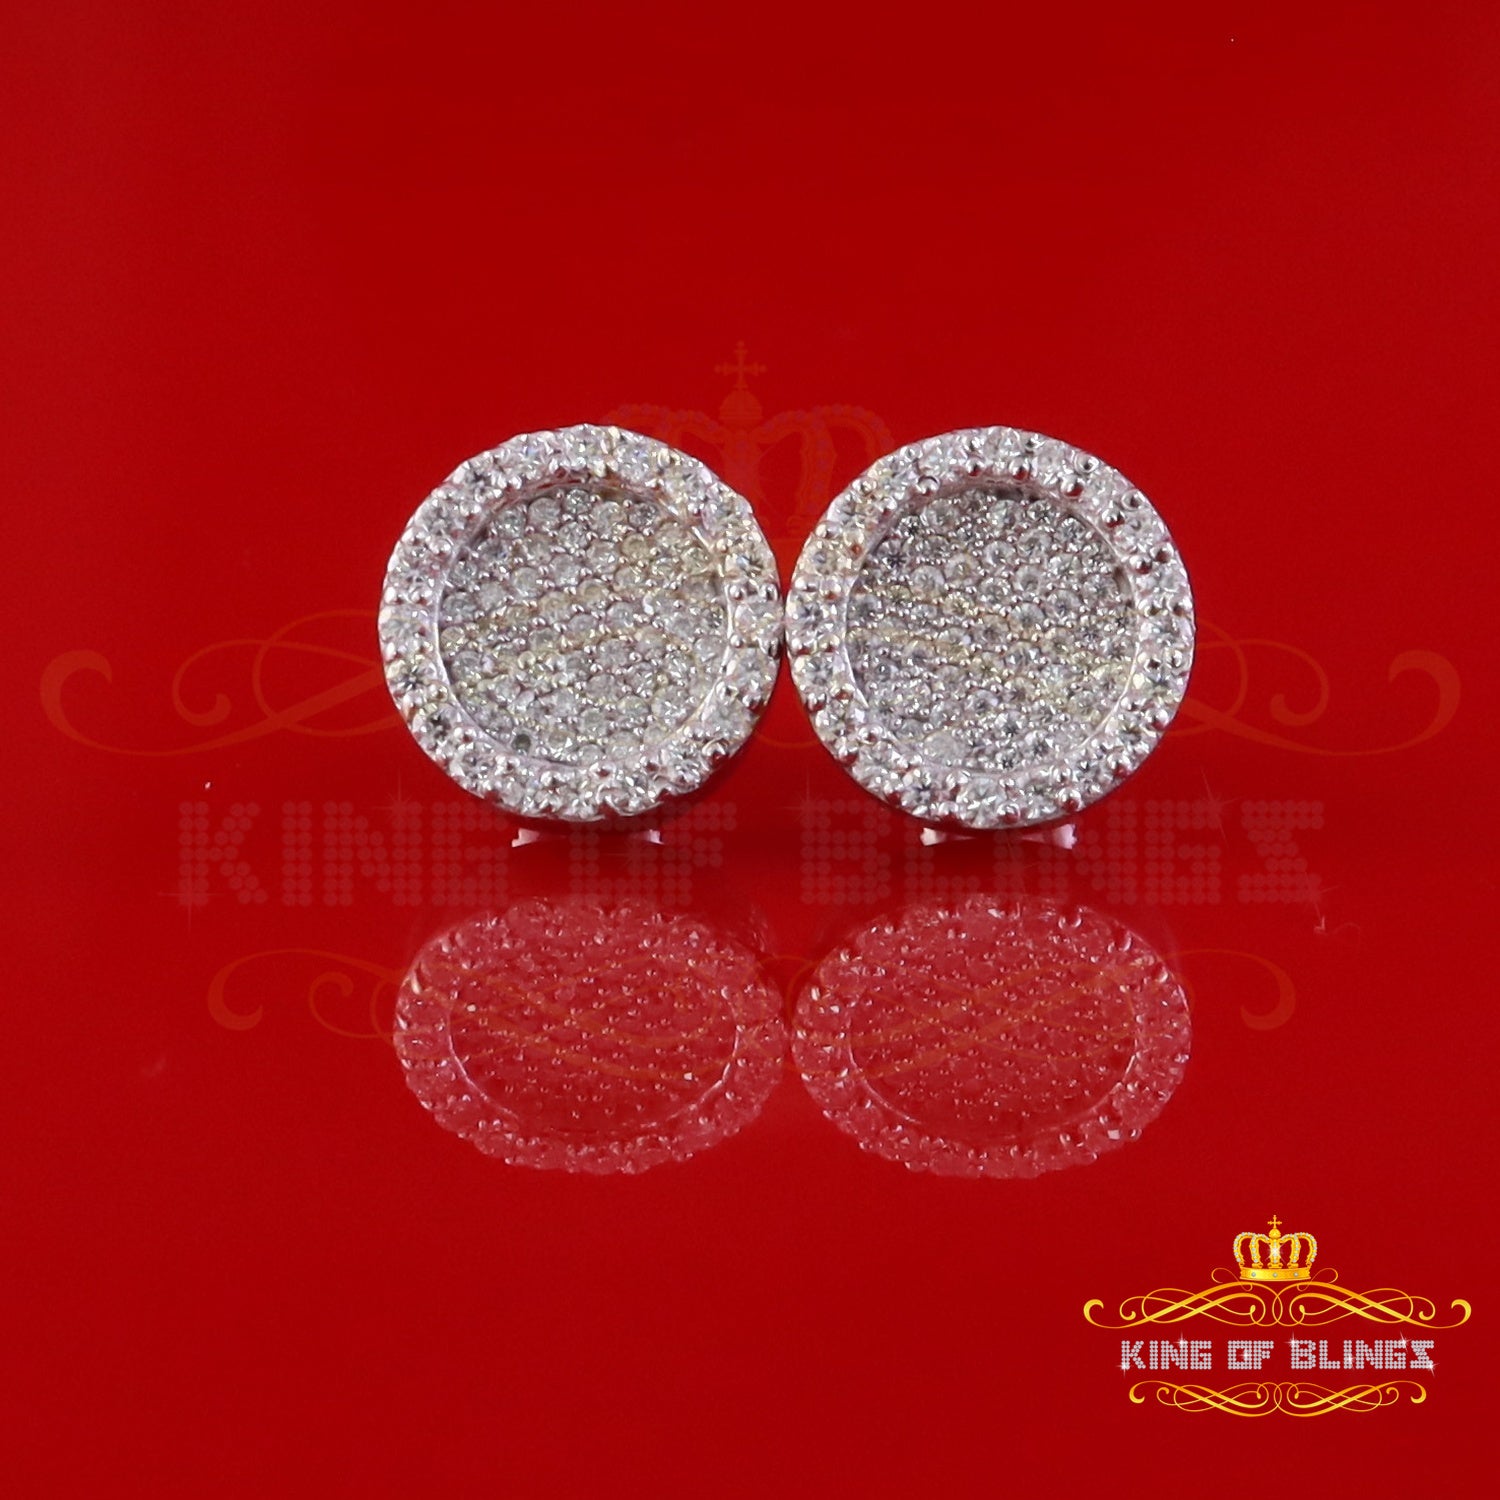 King of Bling's 925 White Silver 1.00ct VVS 'D' Moissanite Round Stud Earring Men's/Womens King of Blings